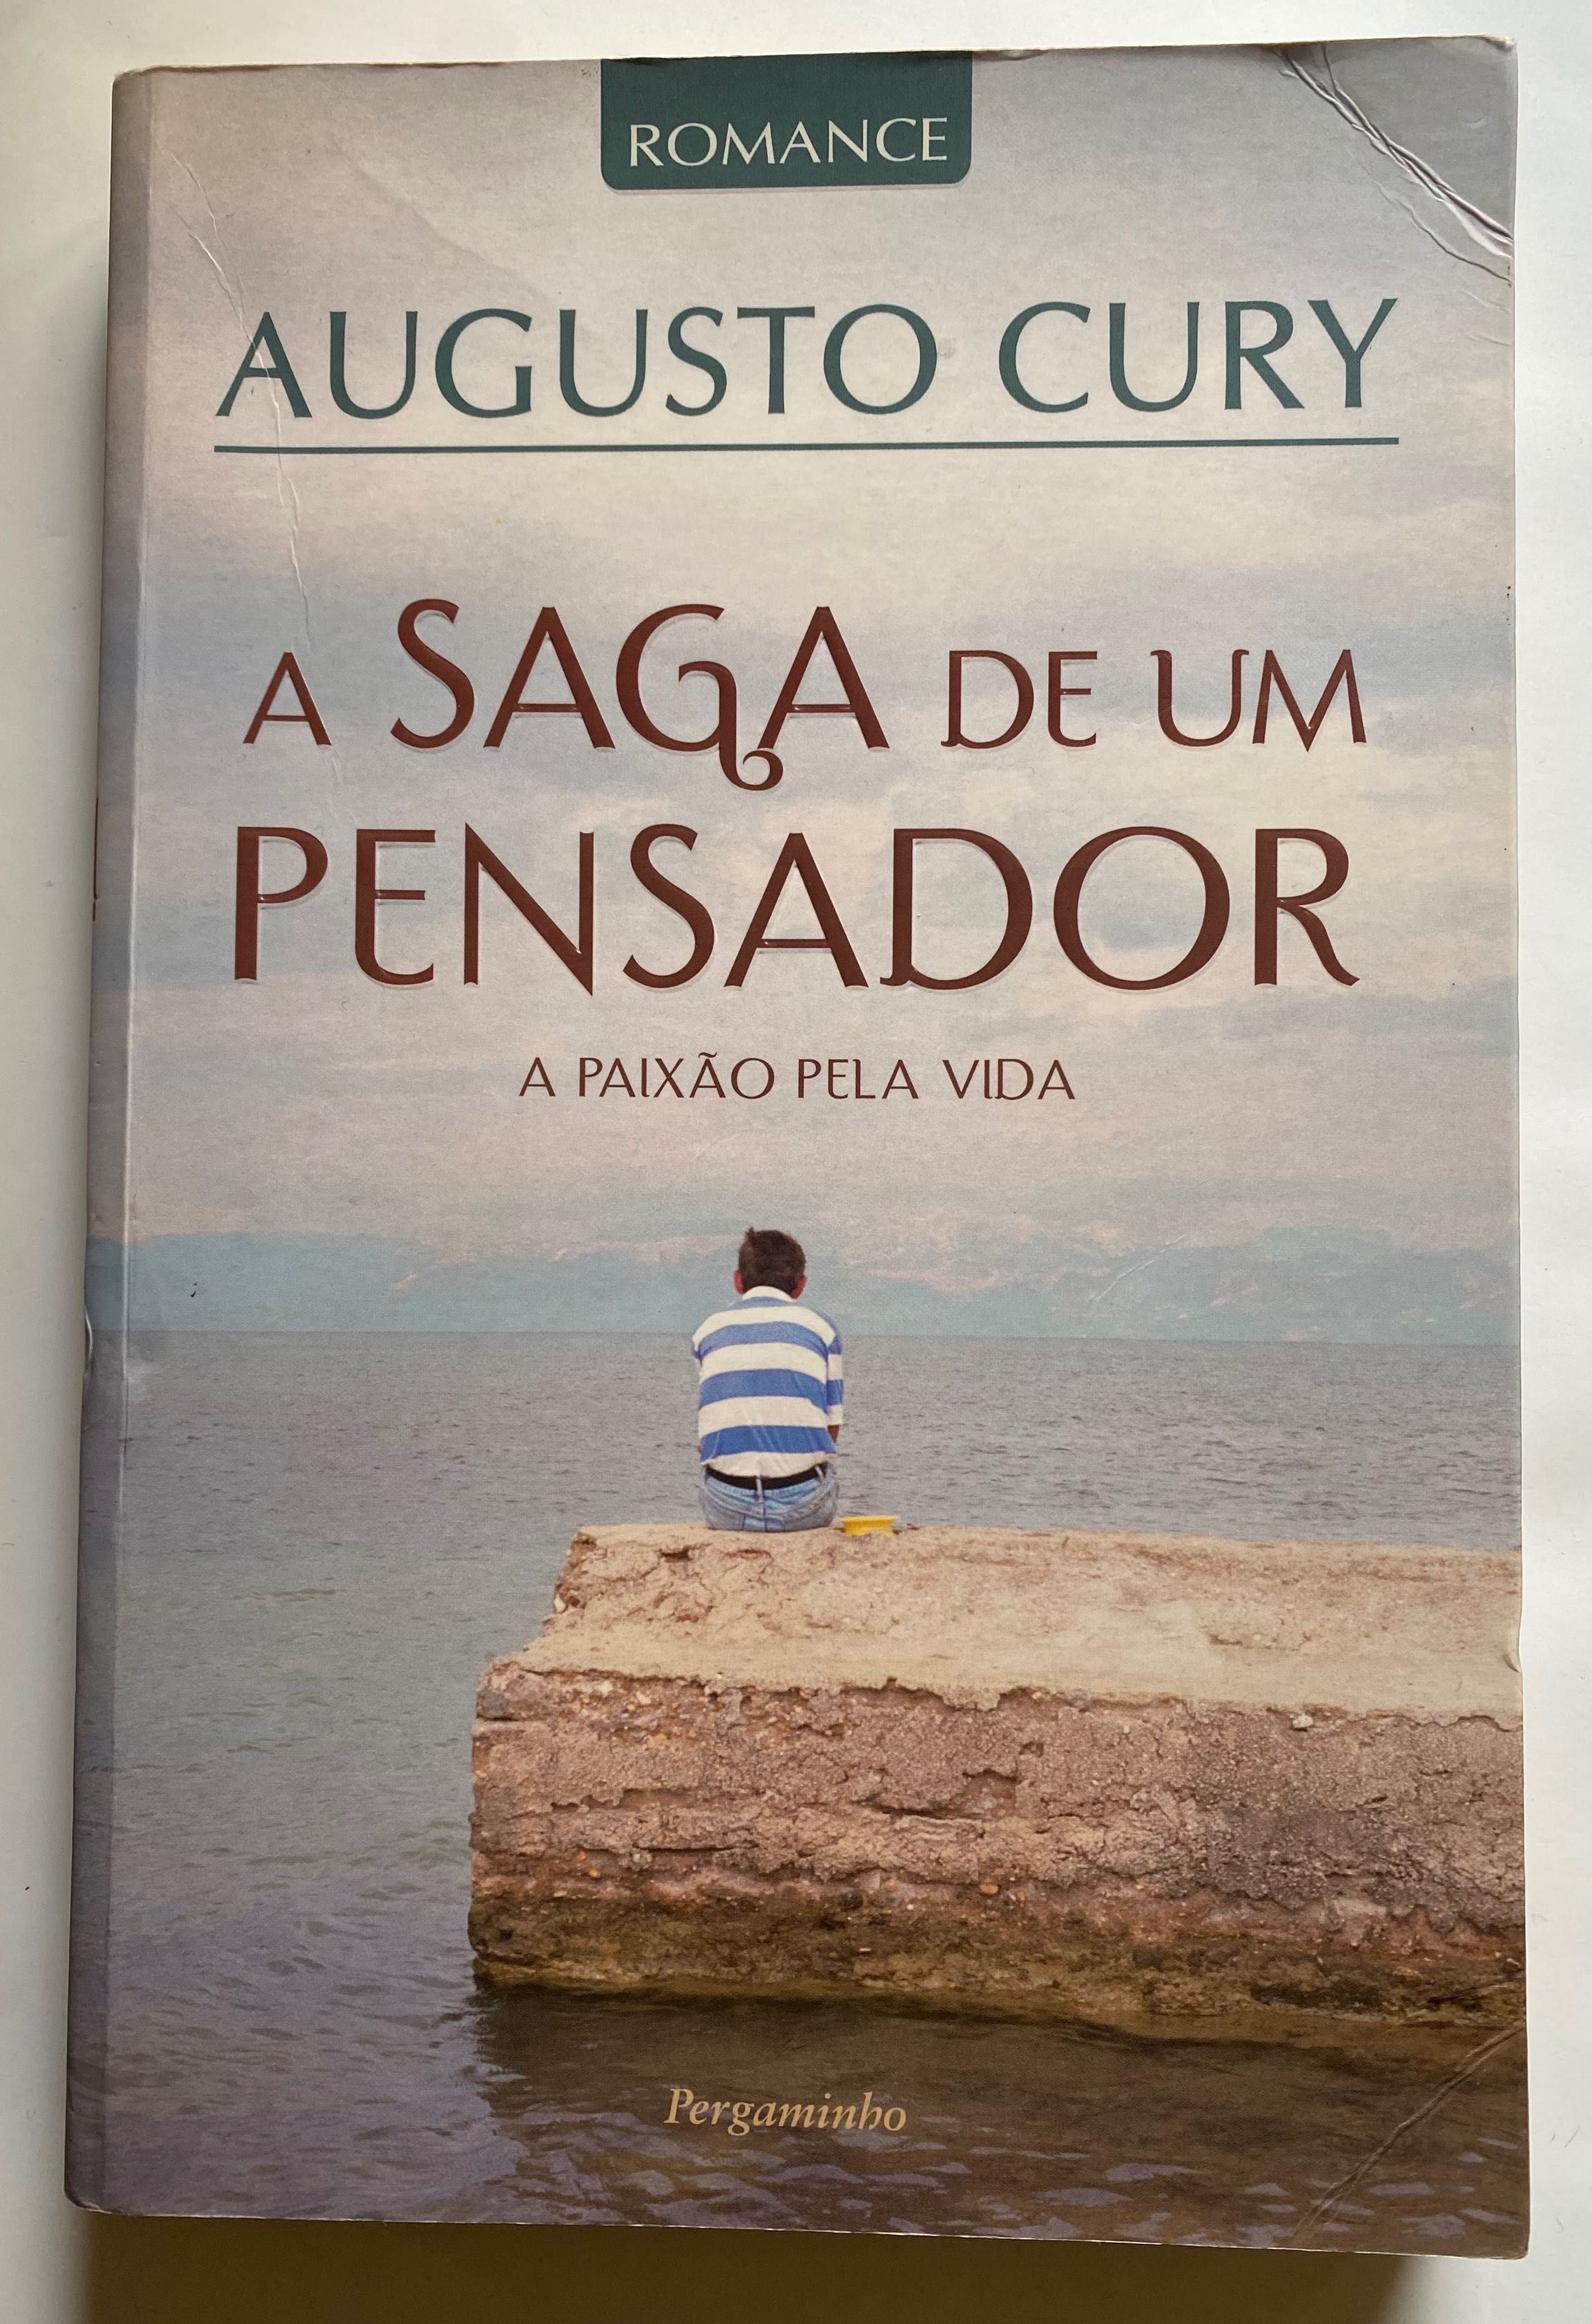 Livro “ A Saga de um Pensador - A Paixão pela Vida “ , de Augusto Cury